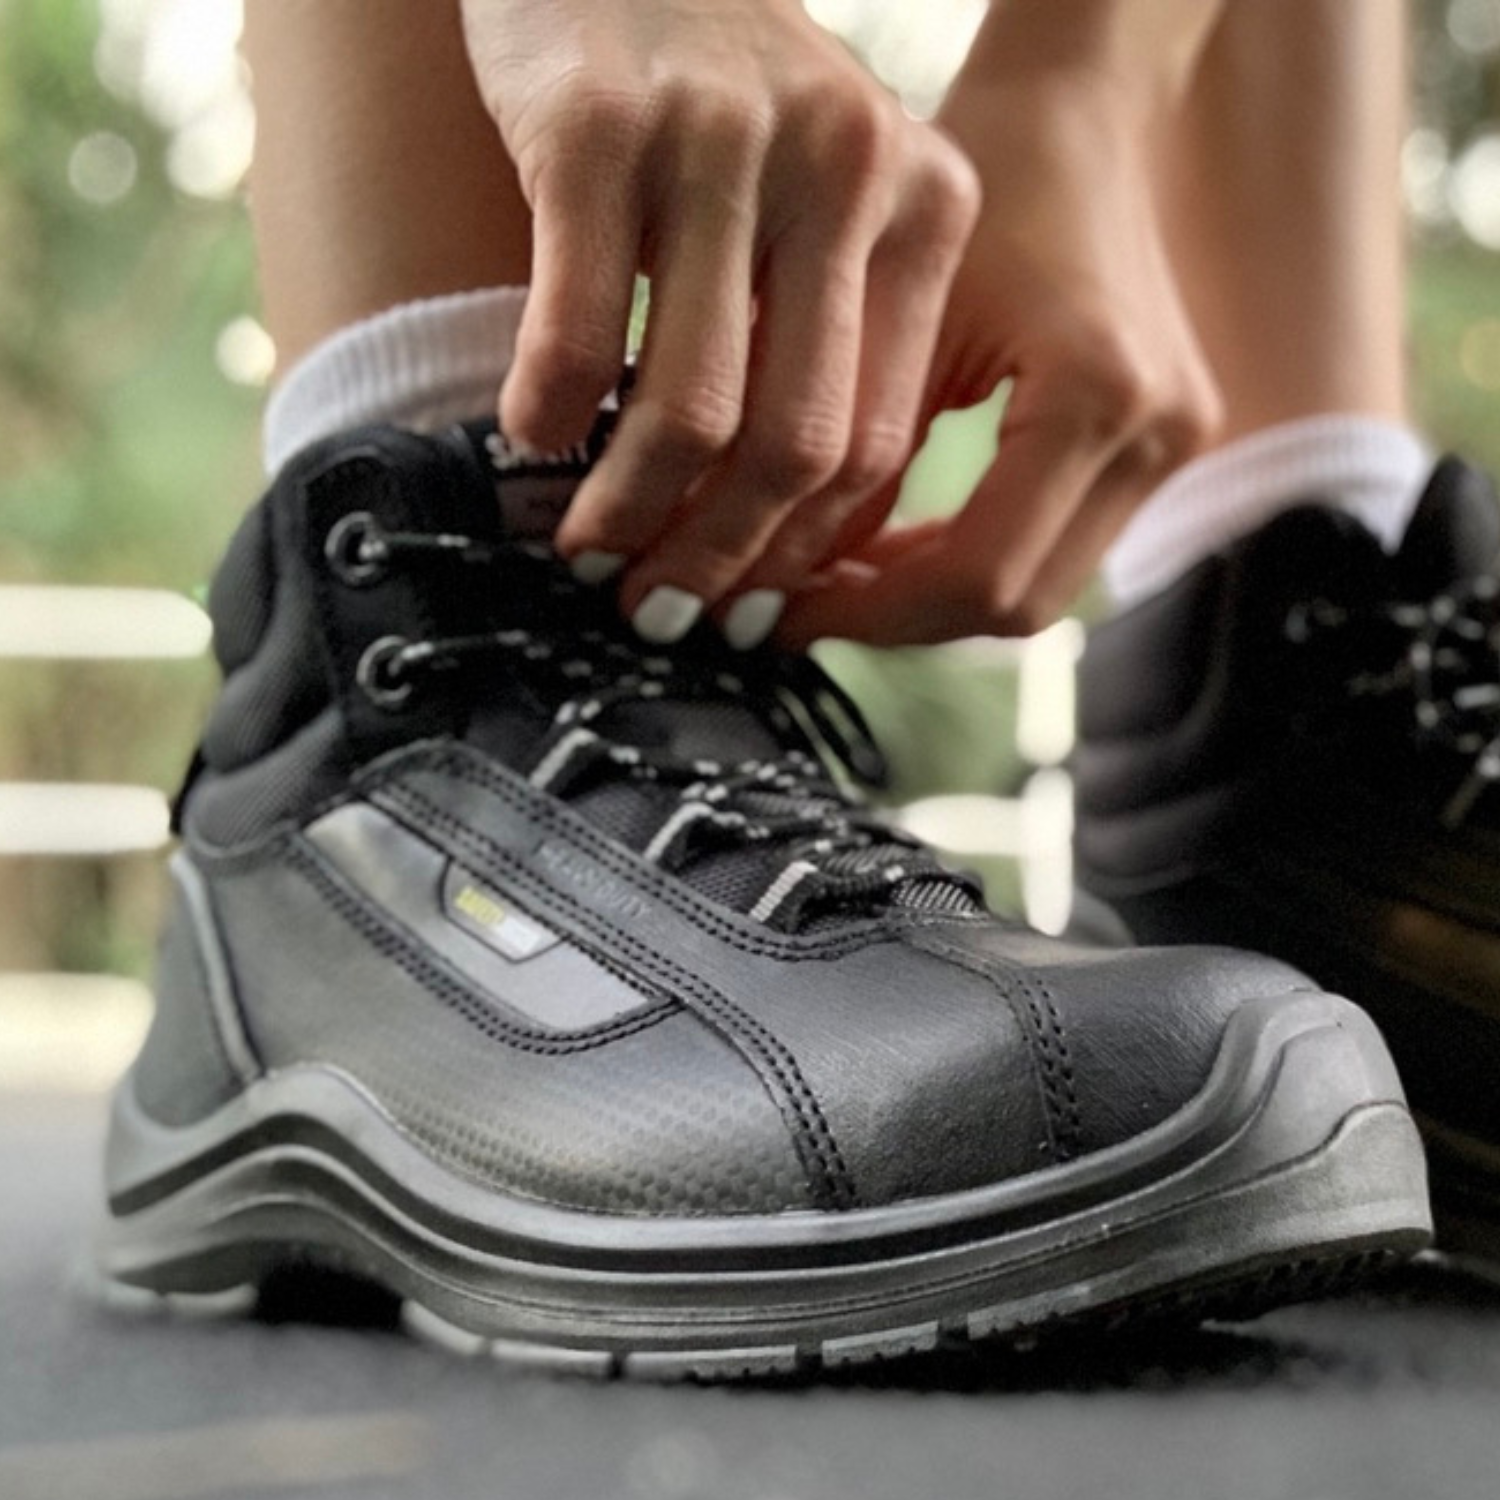 Nyári munkavédelmi cipők, amikben a meleg munkanapokon is kényelmesen dolgozhatsz